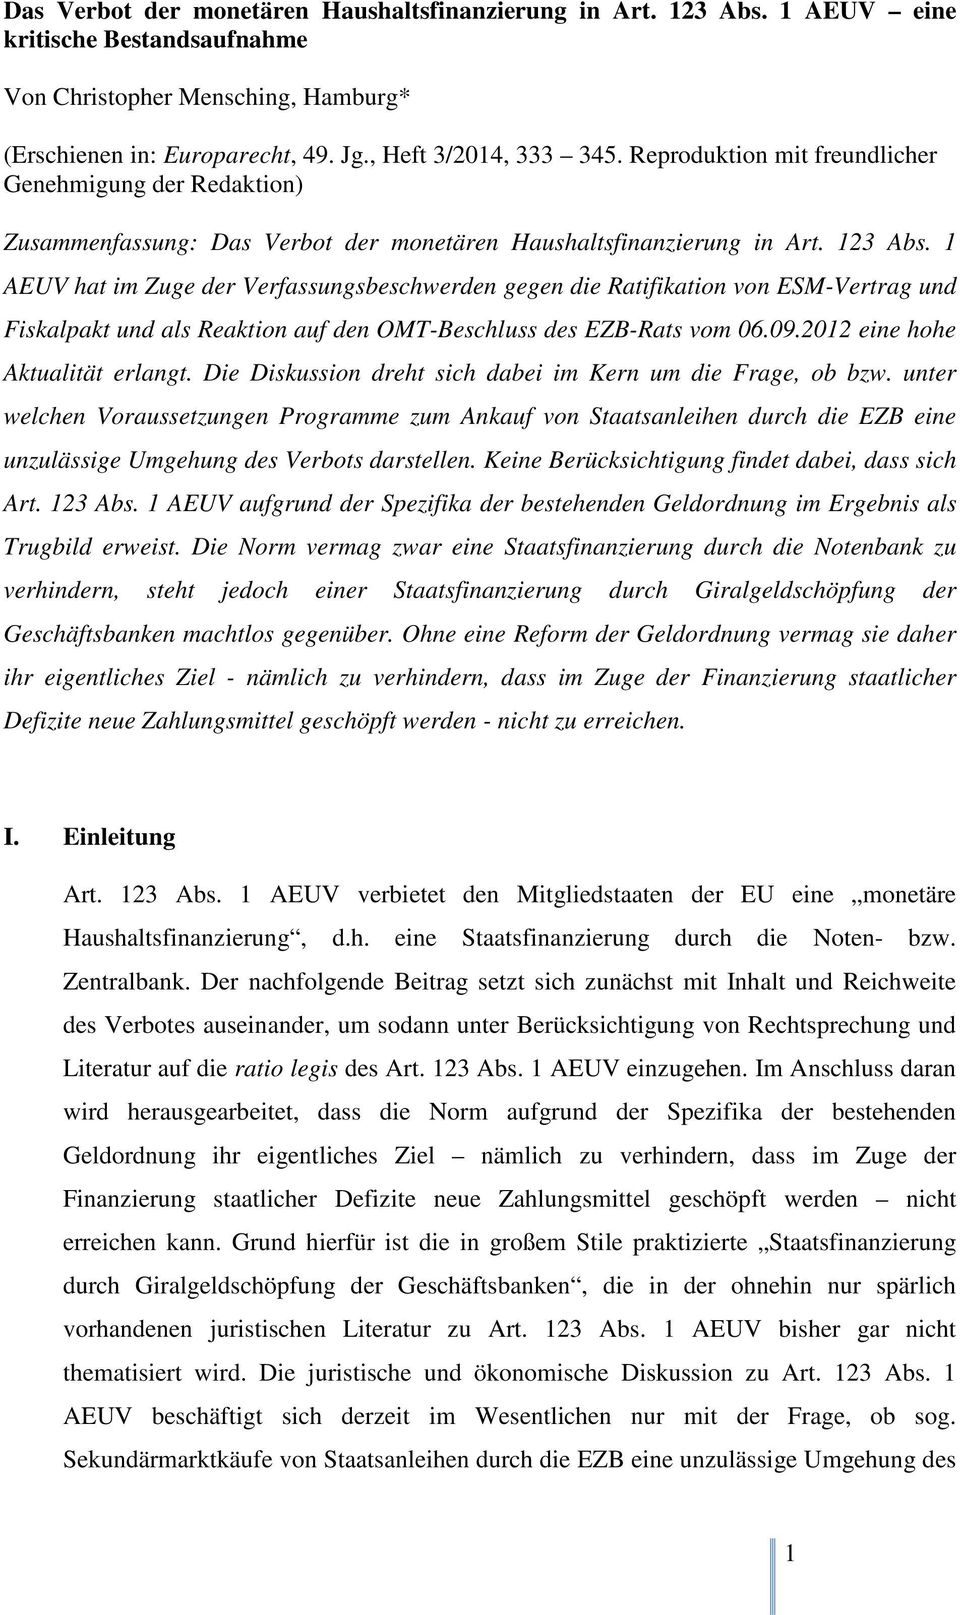 1 AEUV hat im Zuge der Verfassungsbeschwerden gegen die Ratifikation von ESM-Vertrag und Fiskalpakt und als Reaktion auf den OMT-Beschluss des EZB-Rats vom 06.09.2012 eine hohe Aktualität erlangt.